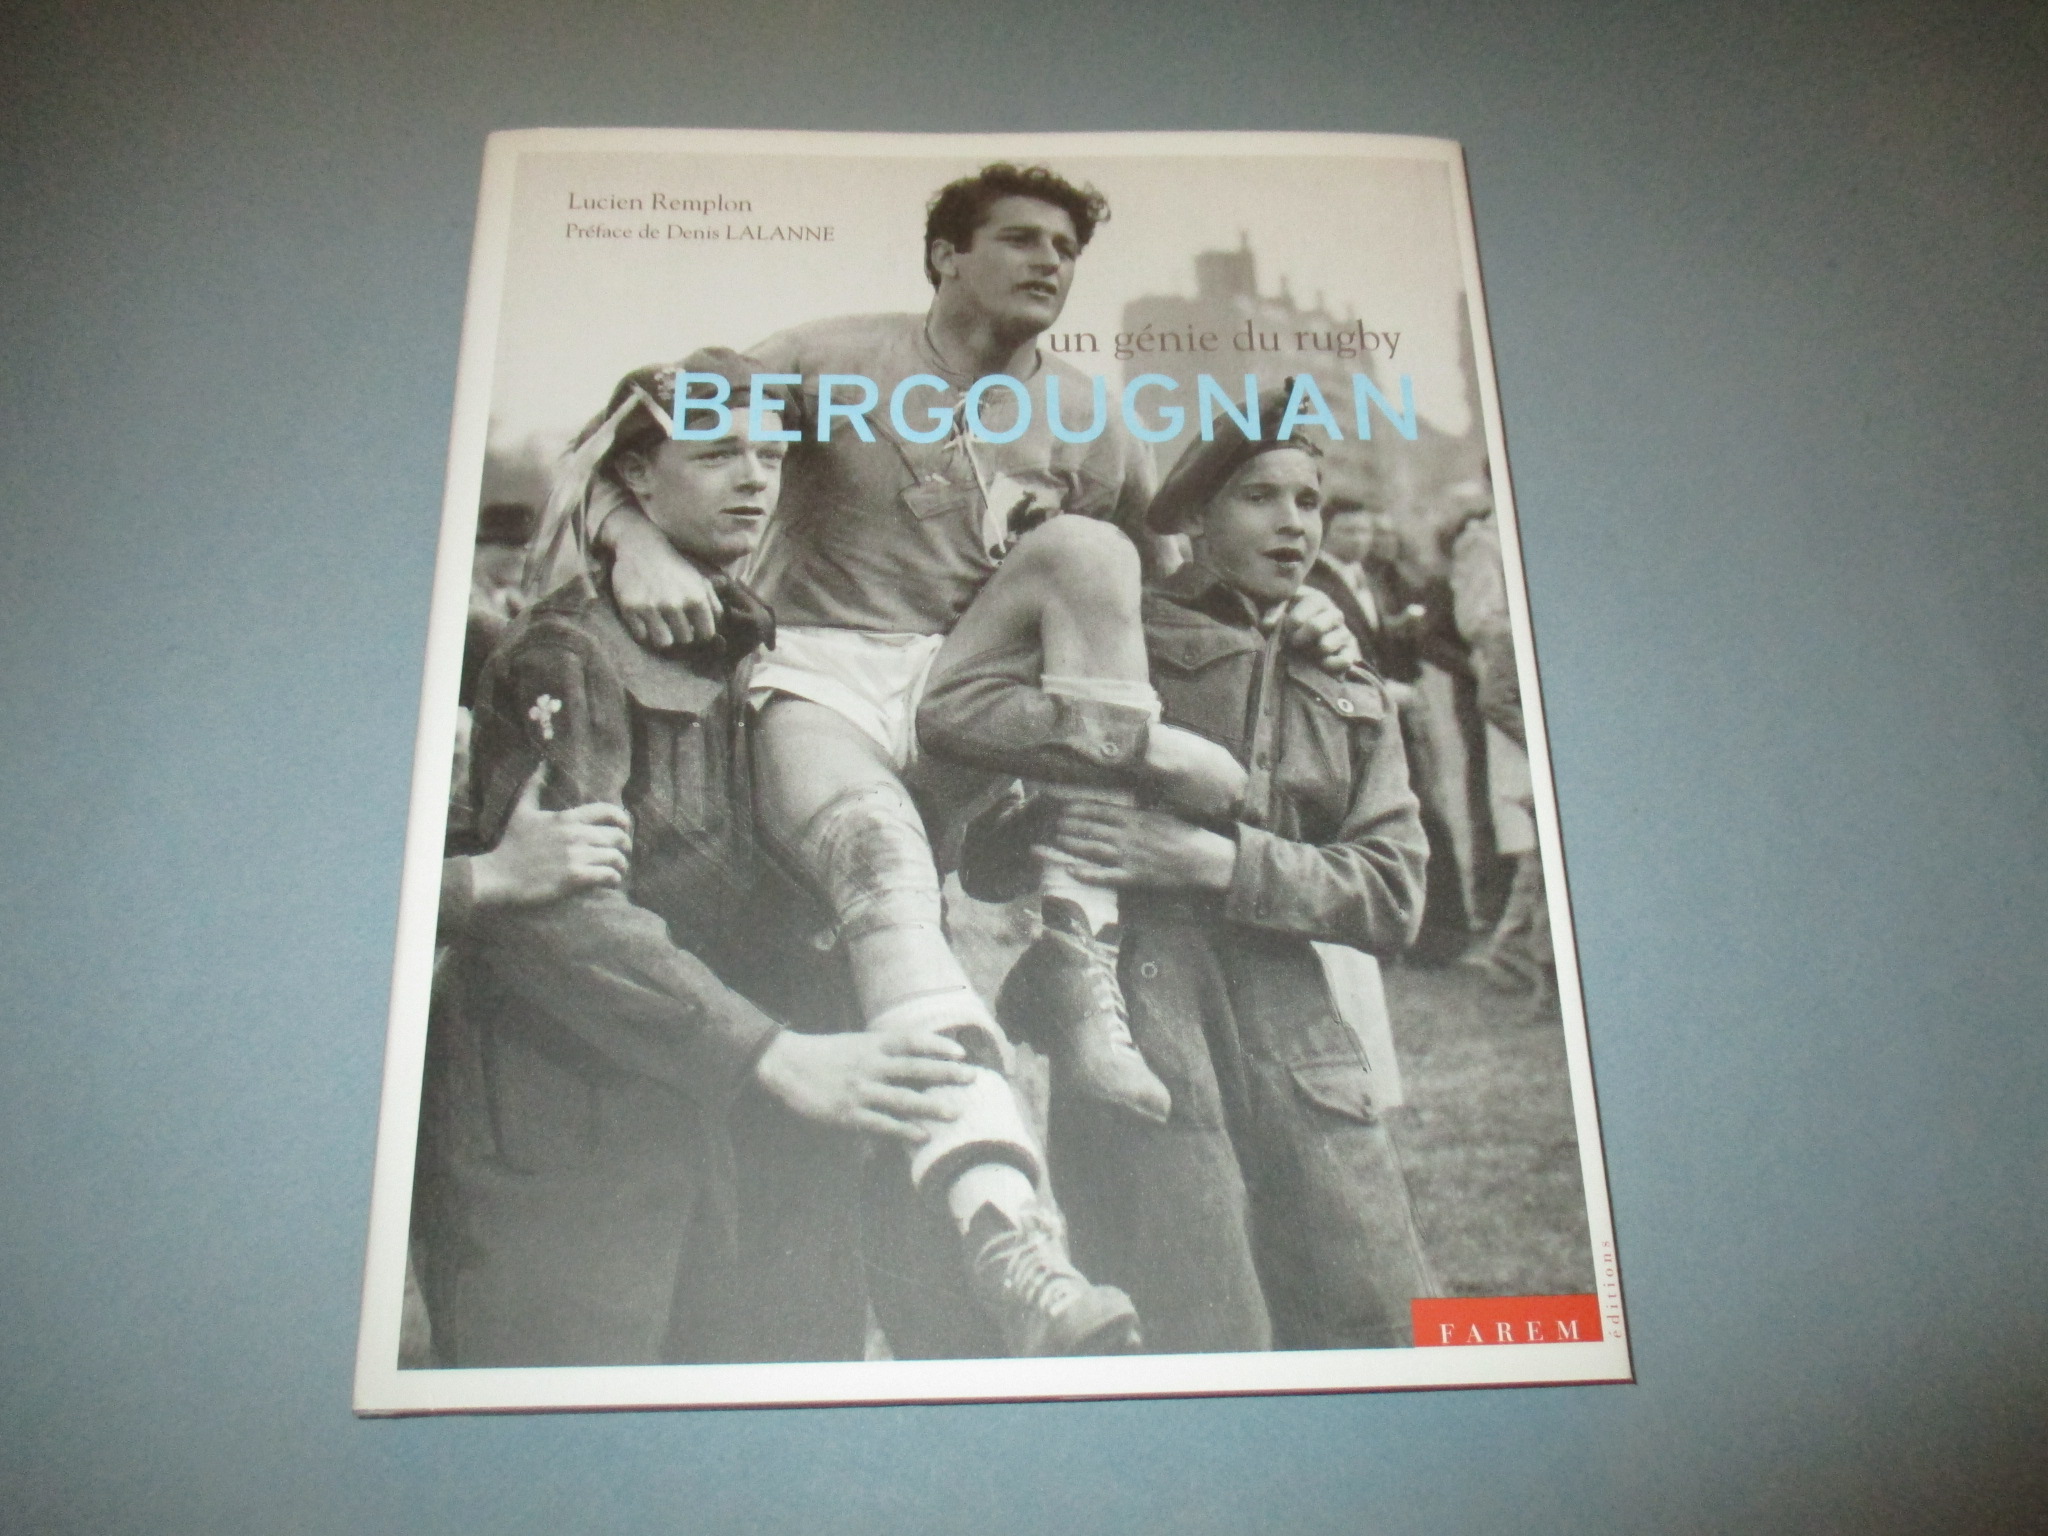 Bergougnan un génie du rugby, Lucien Remplon, Préface de Denis Lalanne, Farem